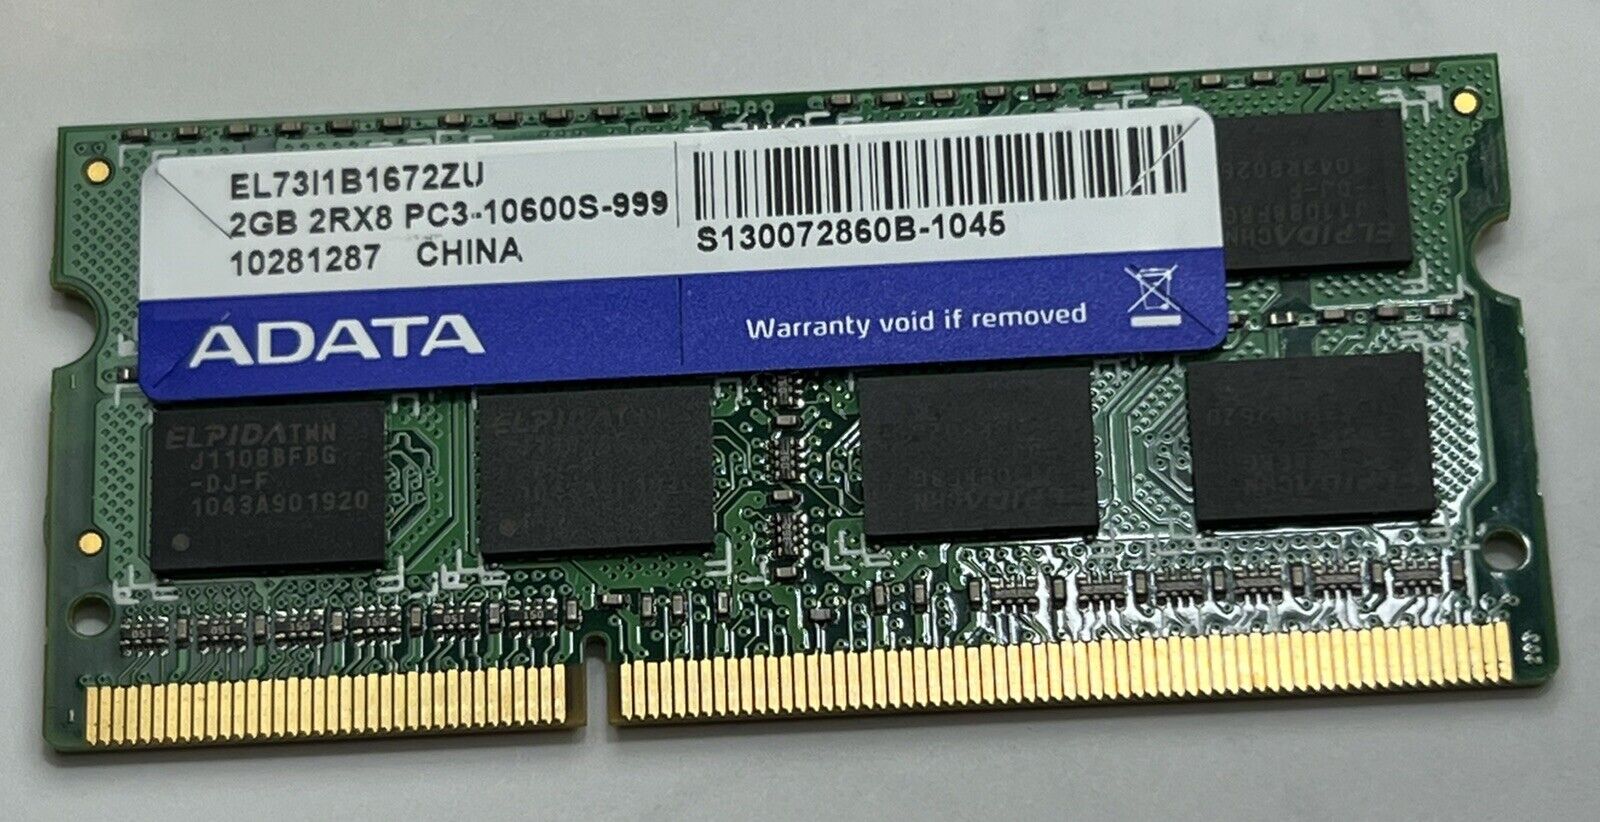 Adata EL73i1b1672zu DDR3 2gb 2RX8 PC3-10600 1333MHz So-dimm Laptop Memory